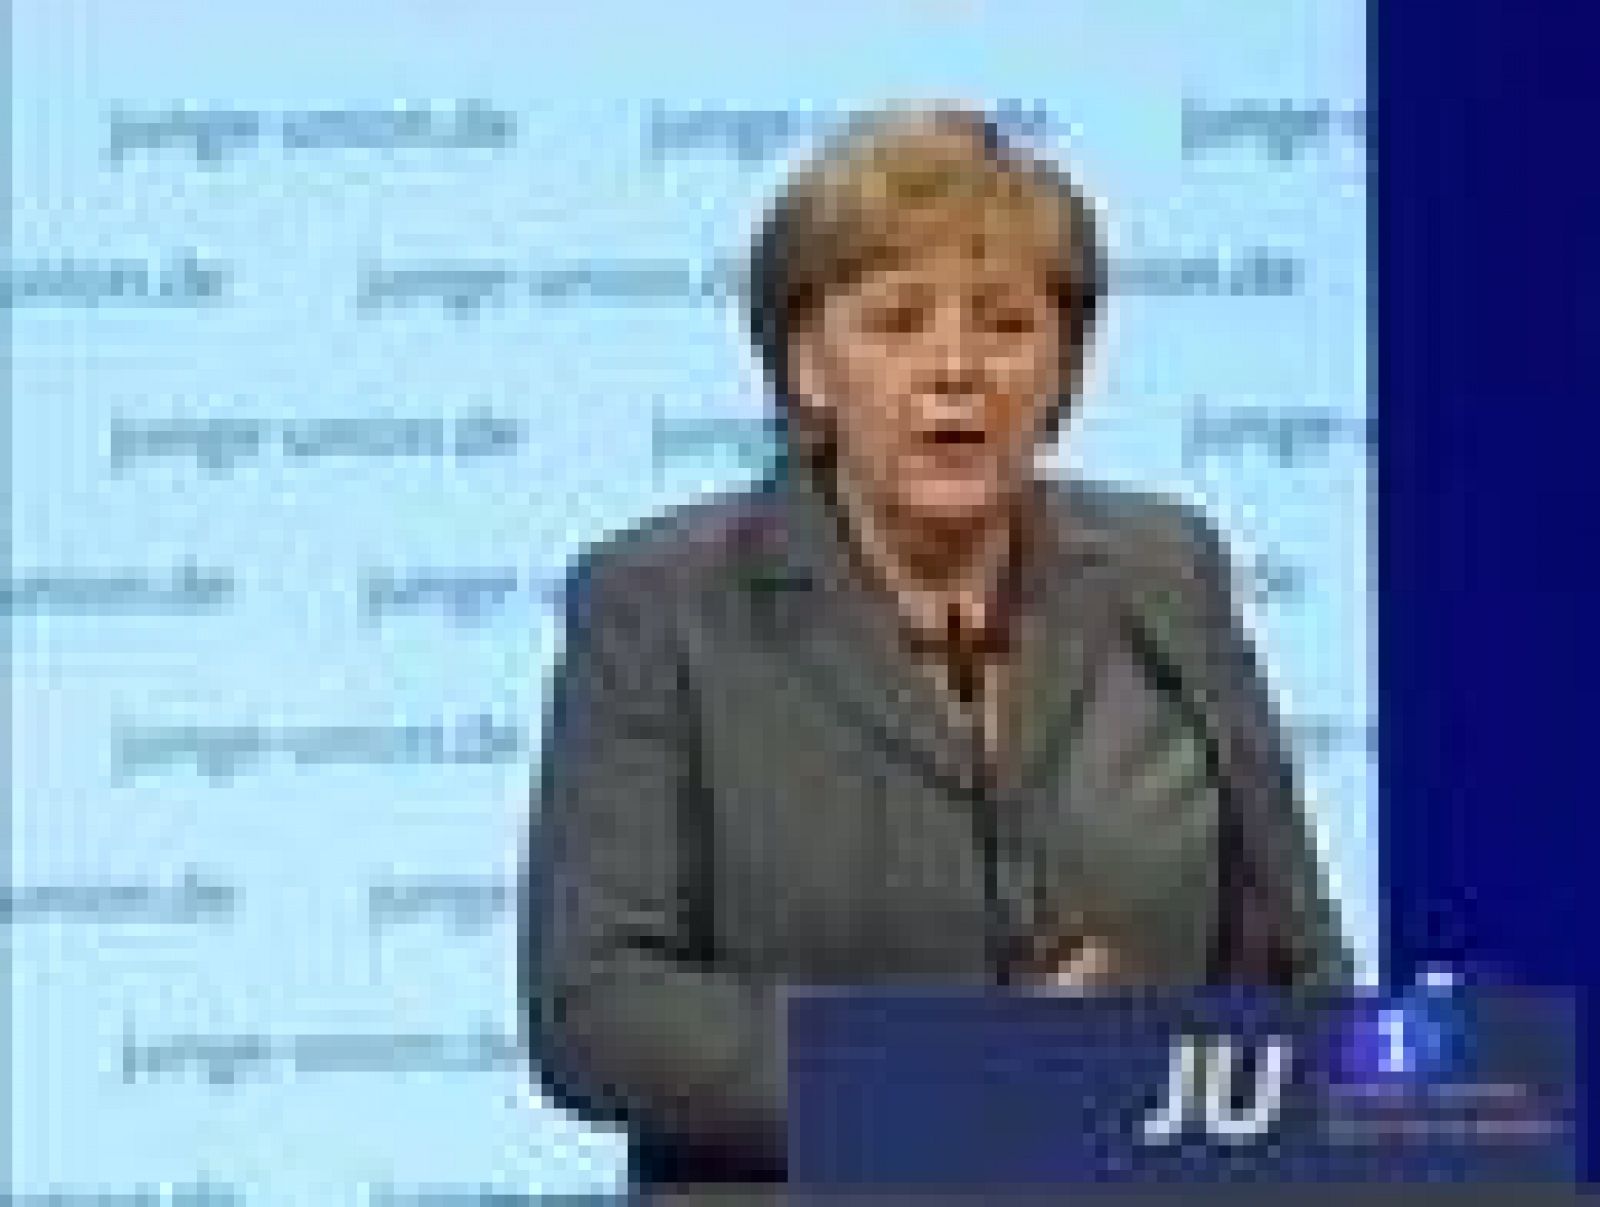 Merkel: "La sociedad multicultural ha fracasado"